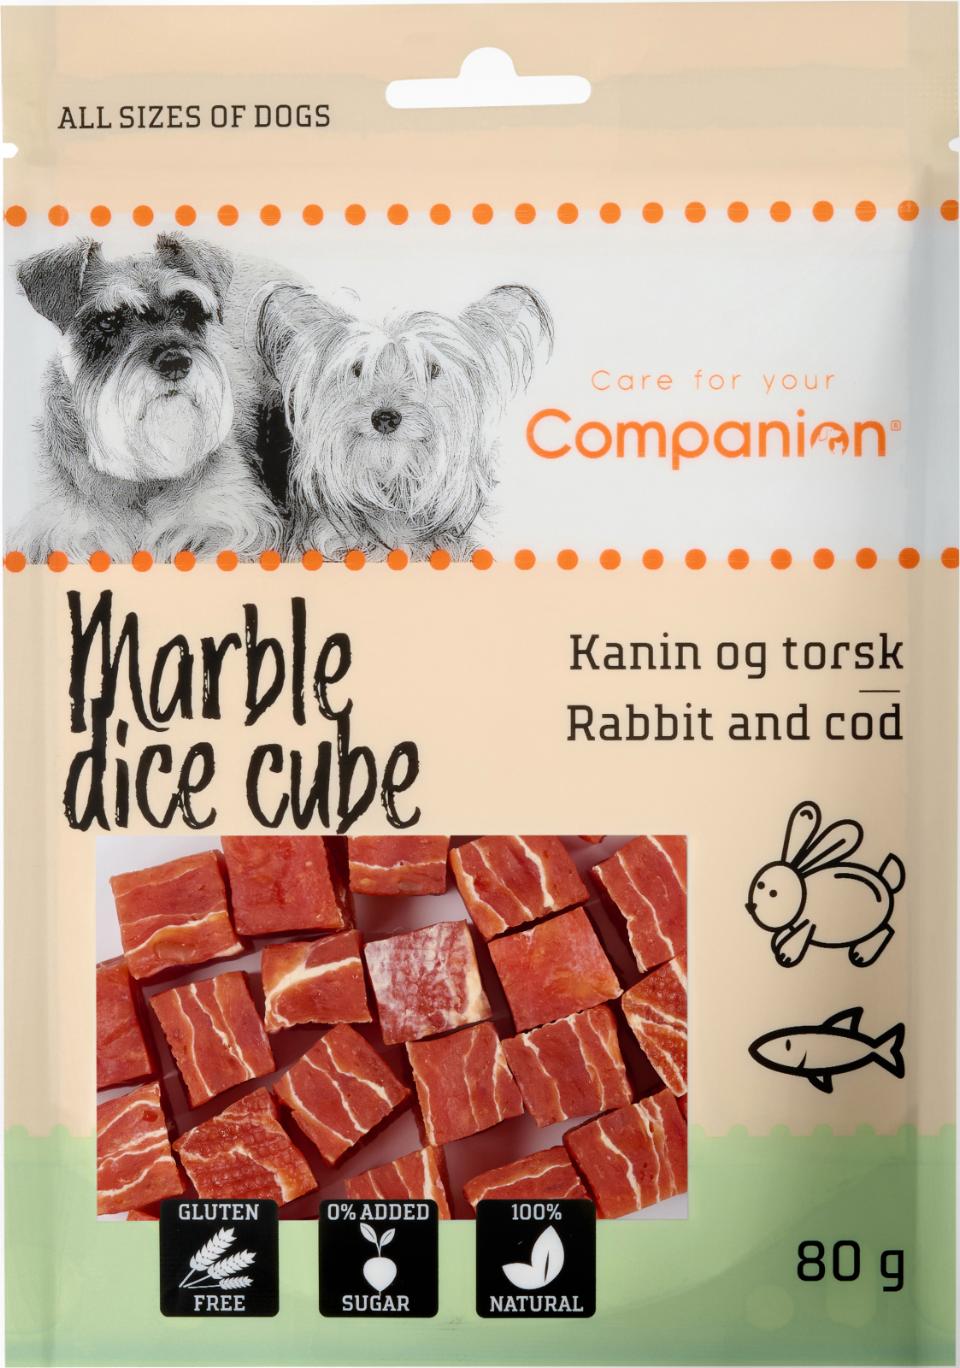 Companion Marble dice cube kanin og torsk 80g